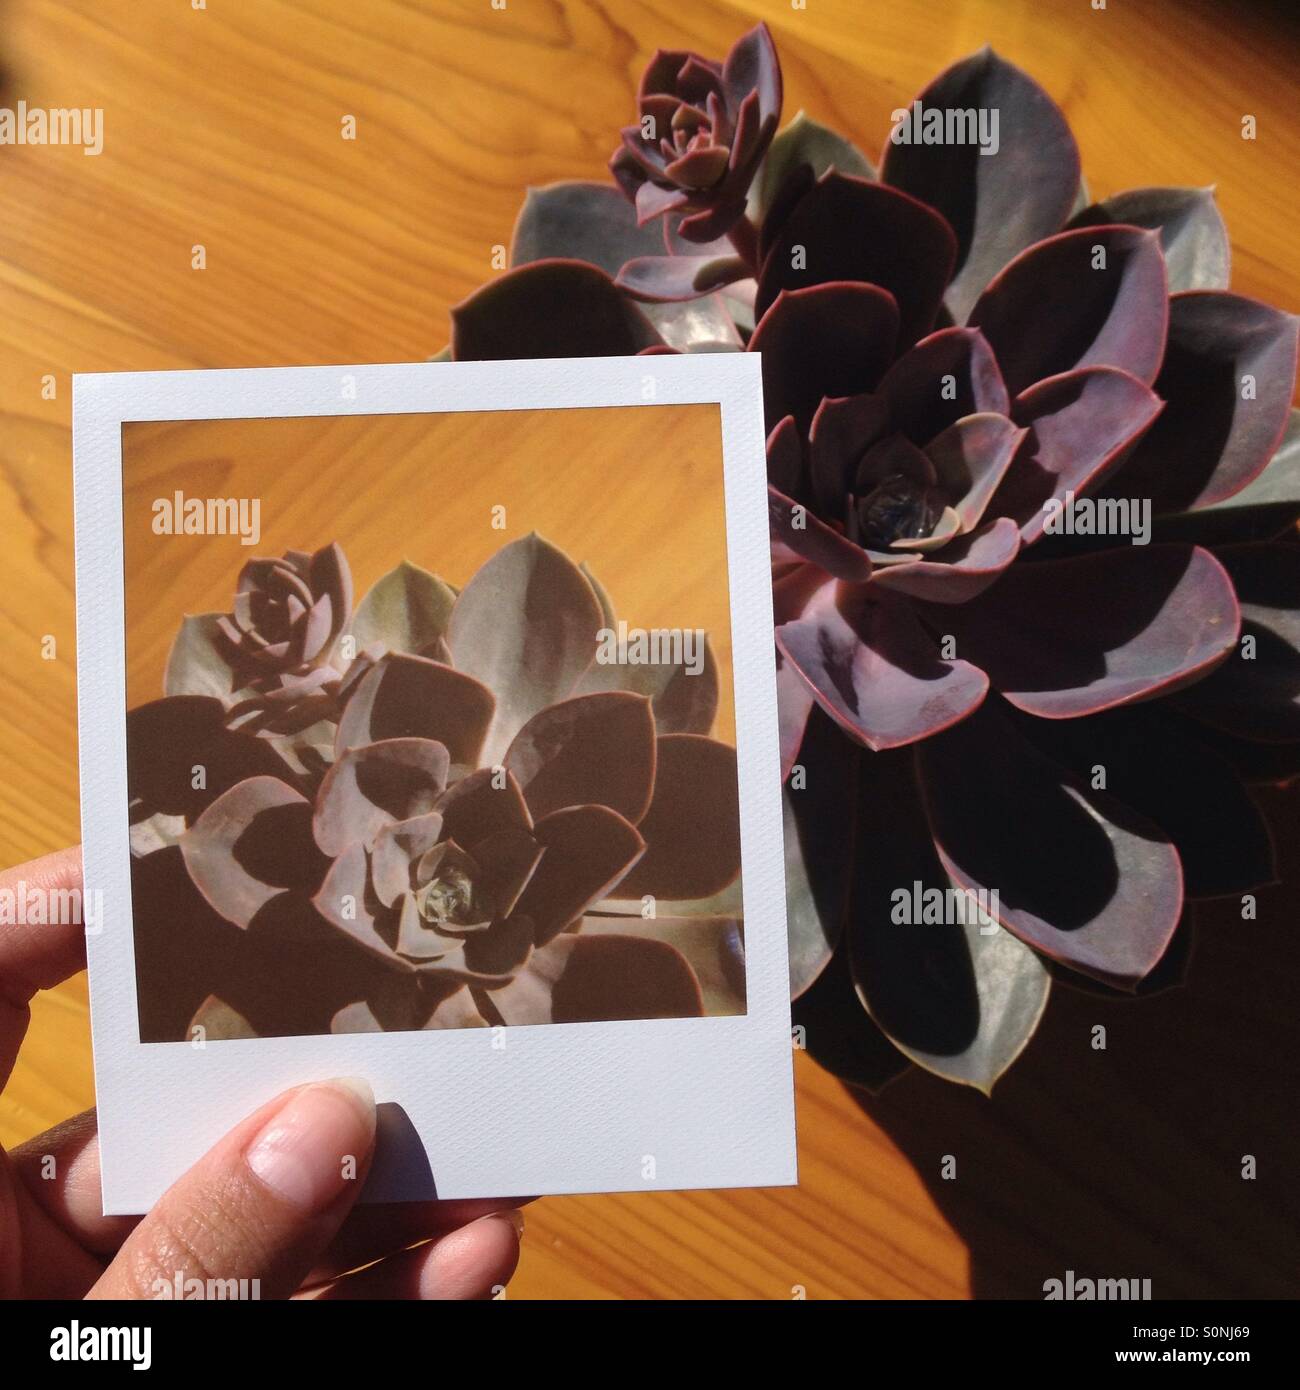 Polaroid-Foto von saftigen bis Anlage zum Vergleich halten. Stockfoto